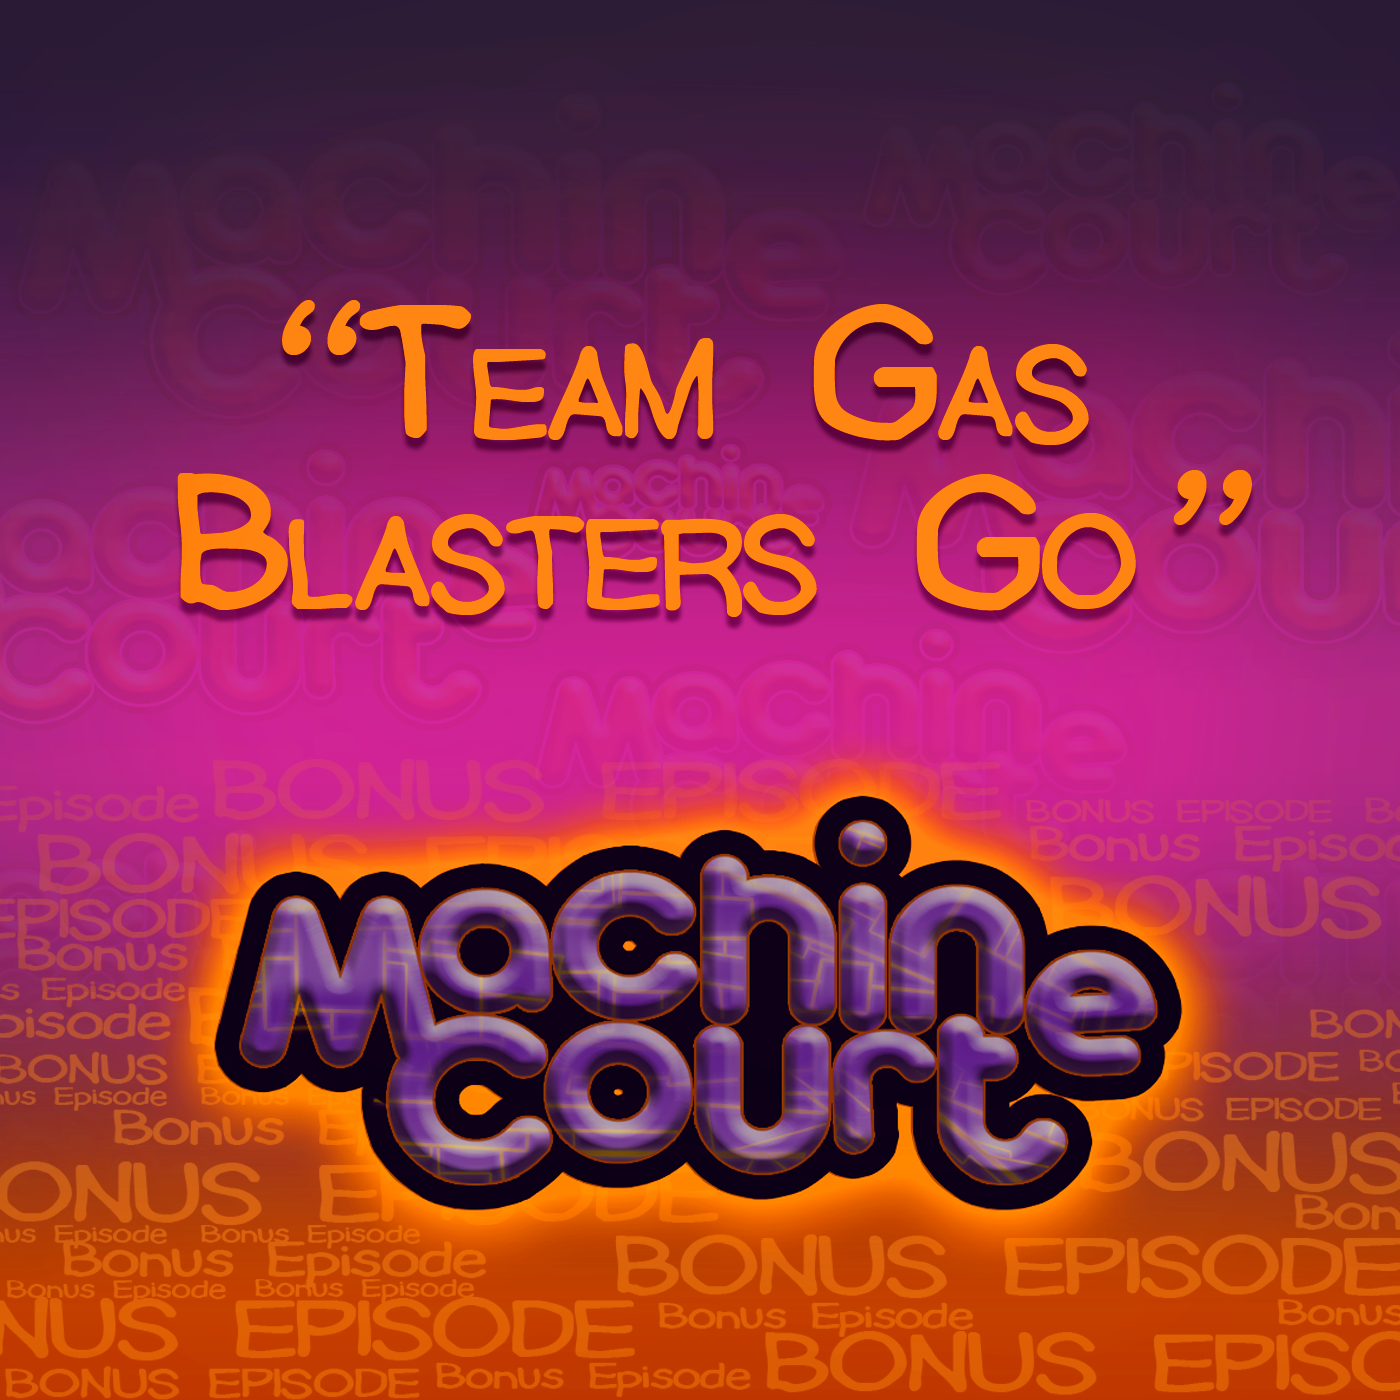 3.2 “Team Gas Blasters”